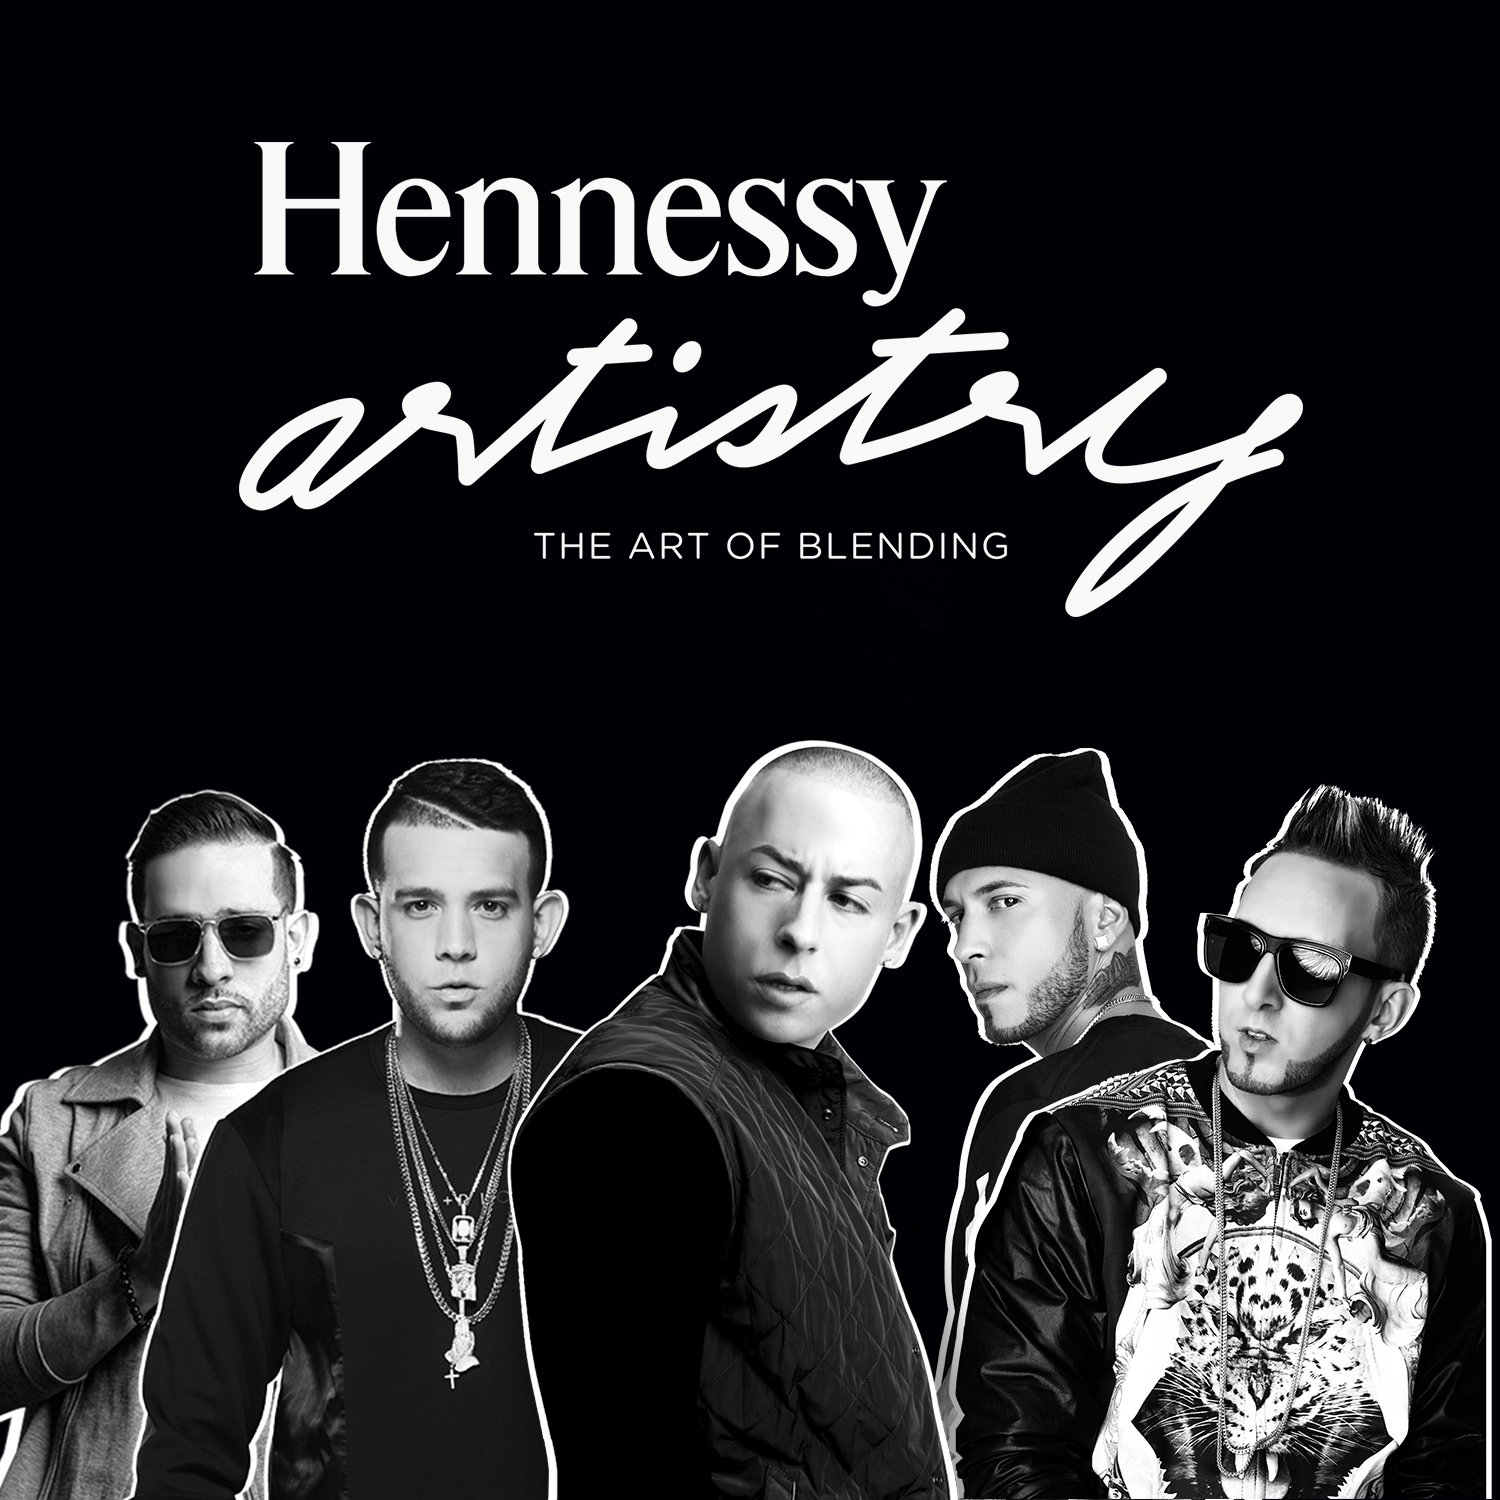 “Hennessy Artistry” reunirá a grandes estrellas del género urbano